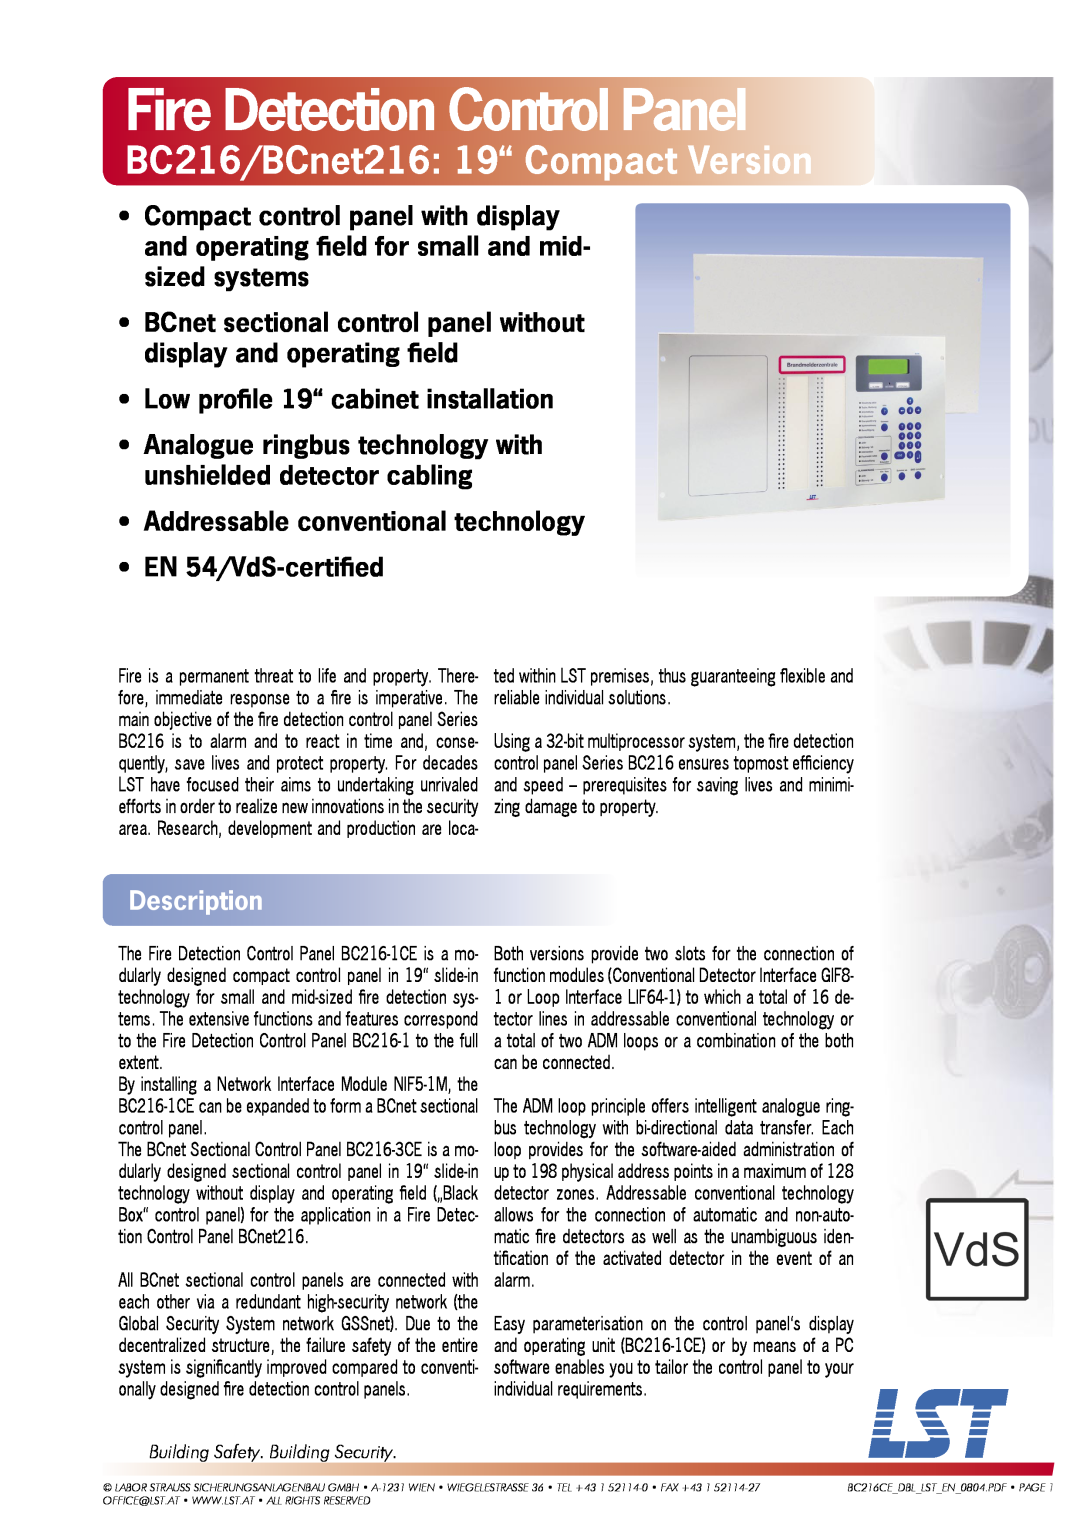 LST BCnet216: 19 manual Description, Fire Detection Control Panel, BC216/BCnet216 19“ Compact Version, EN 54/VdS-certiﬁed 